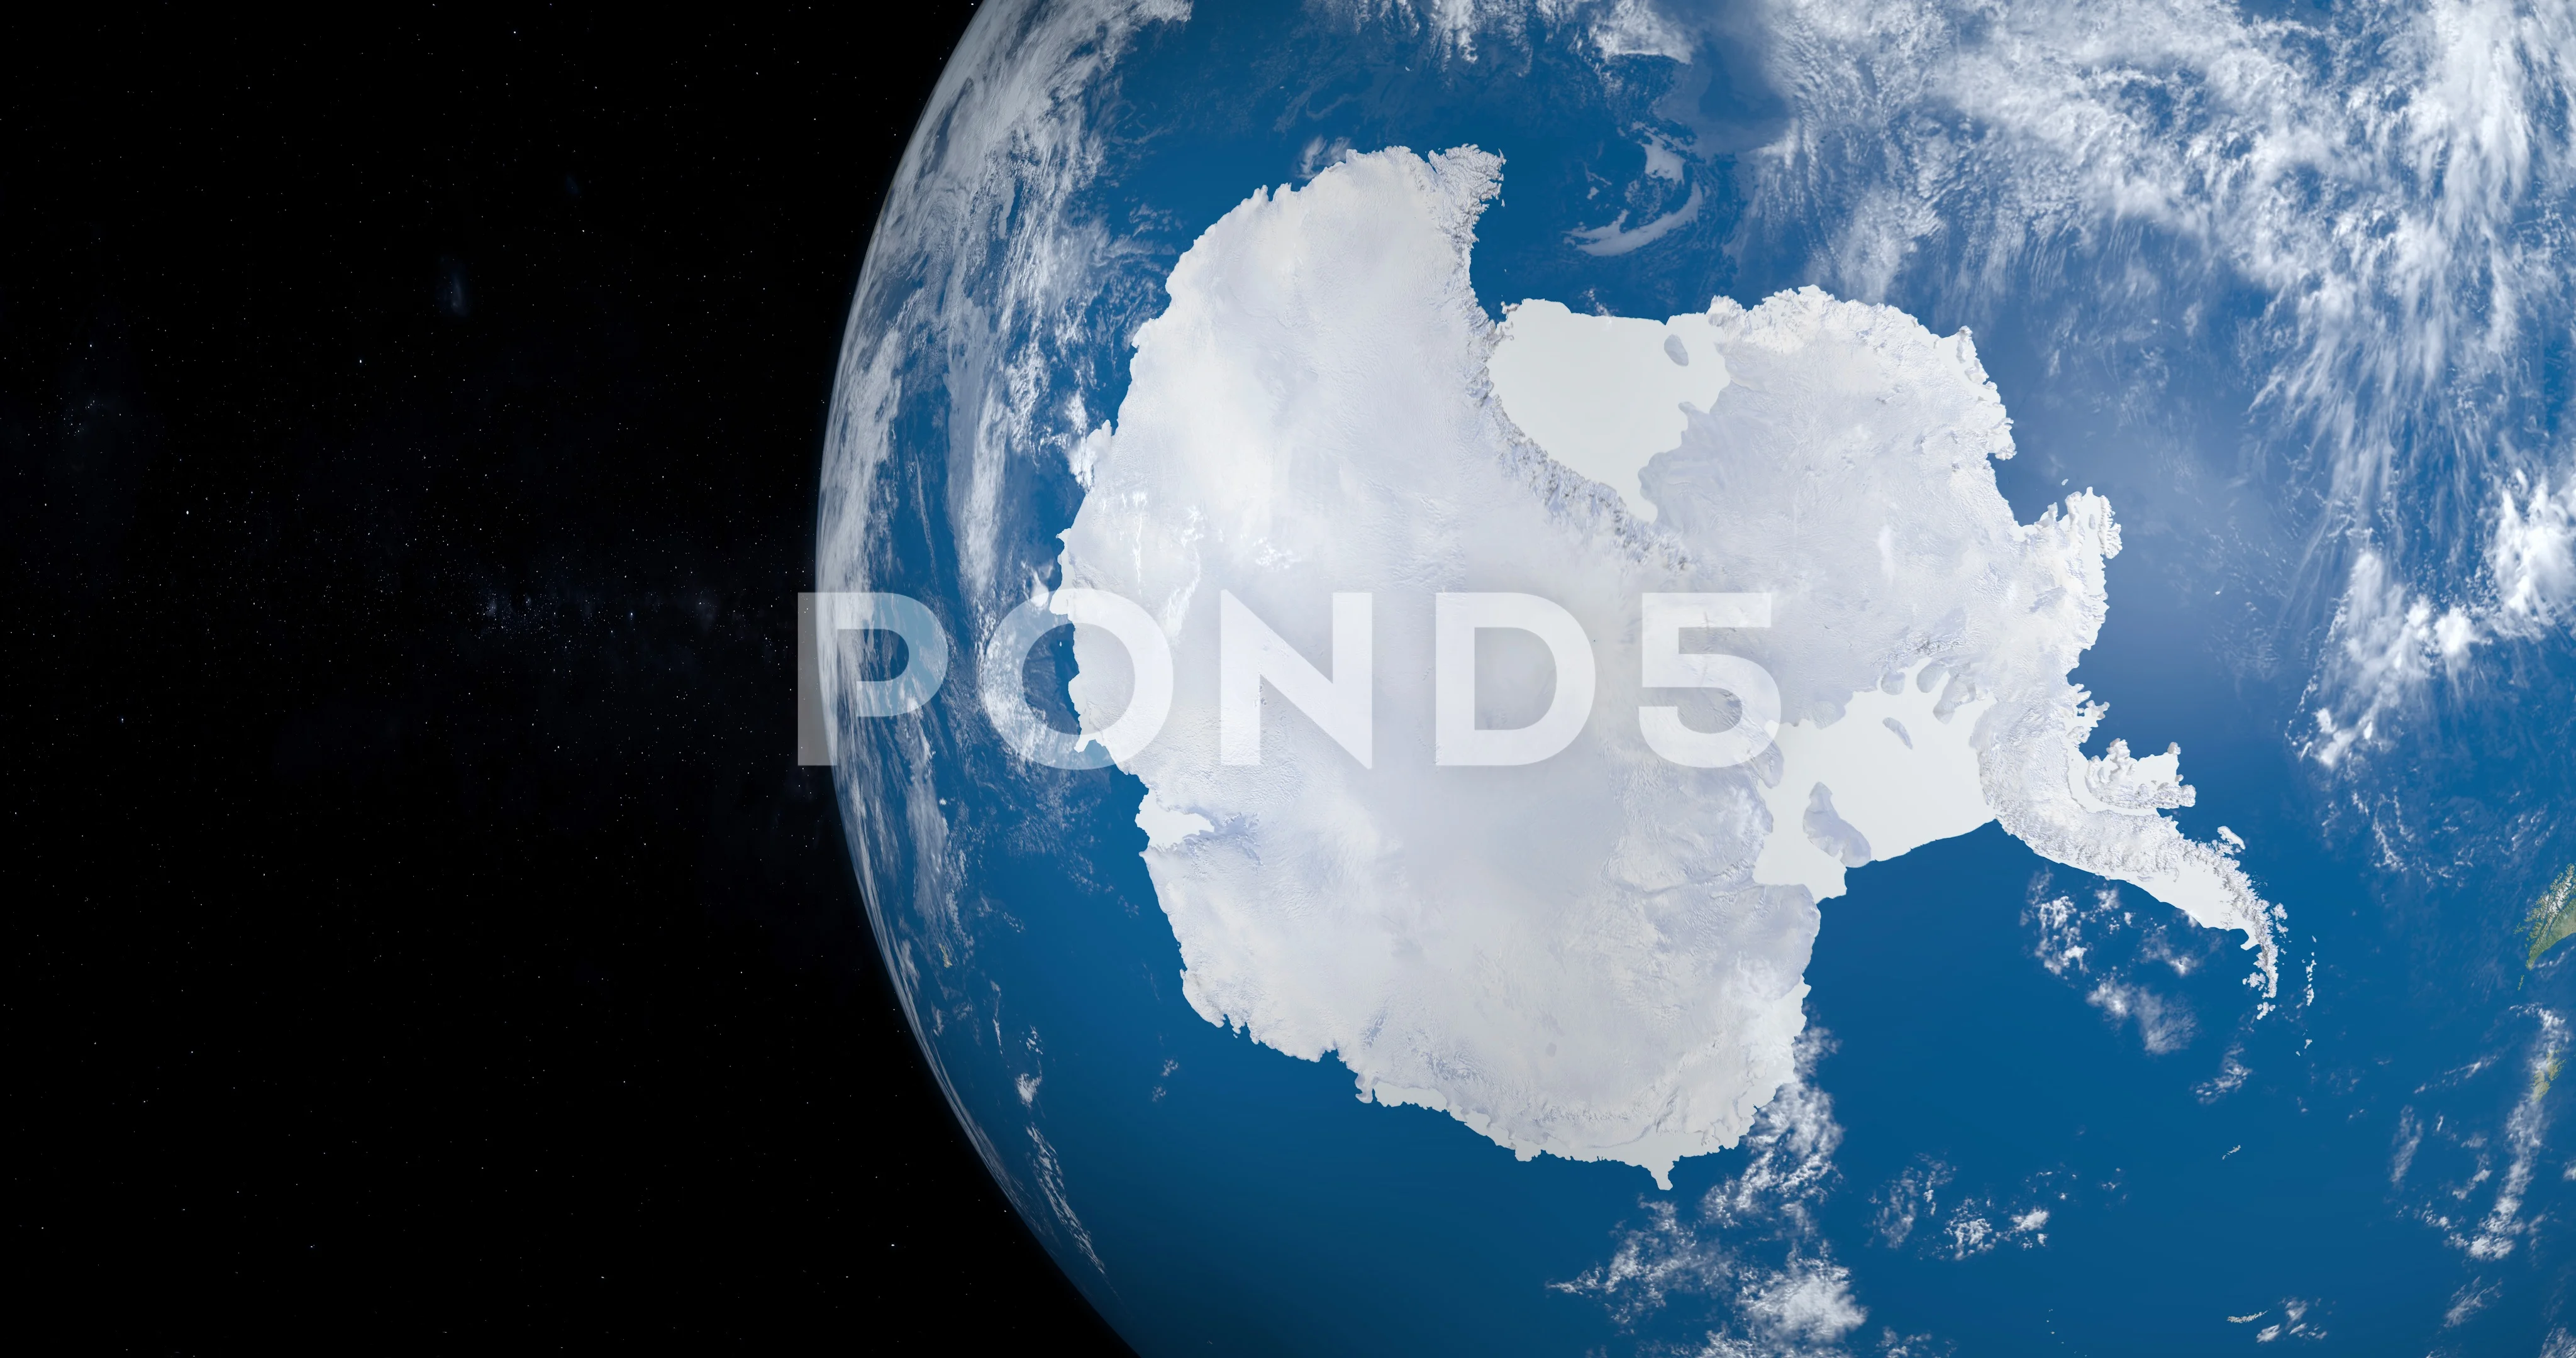 south pole globe